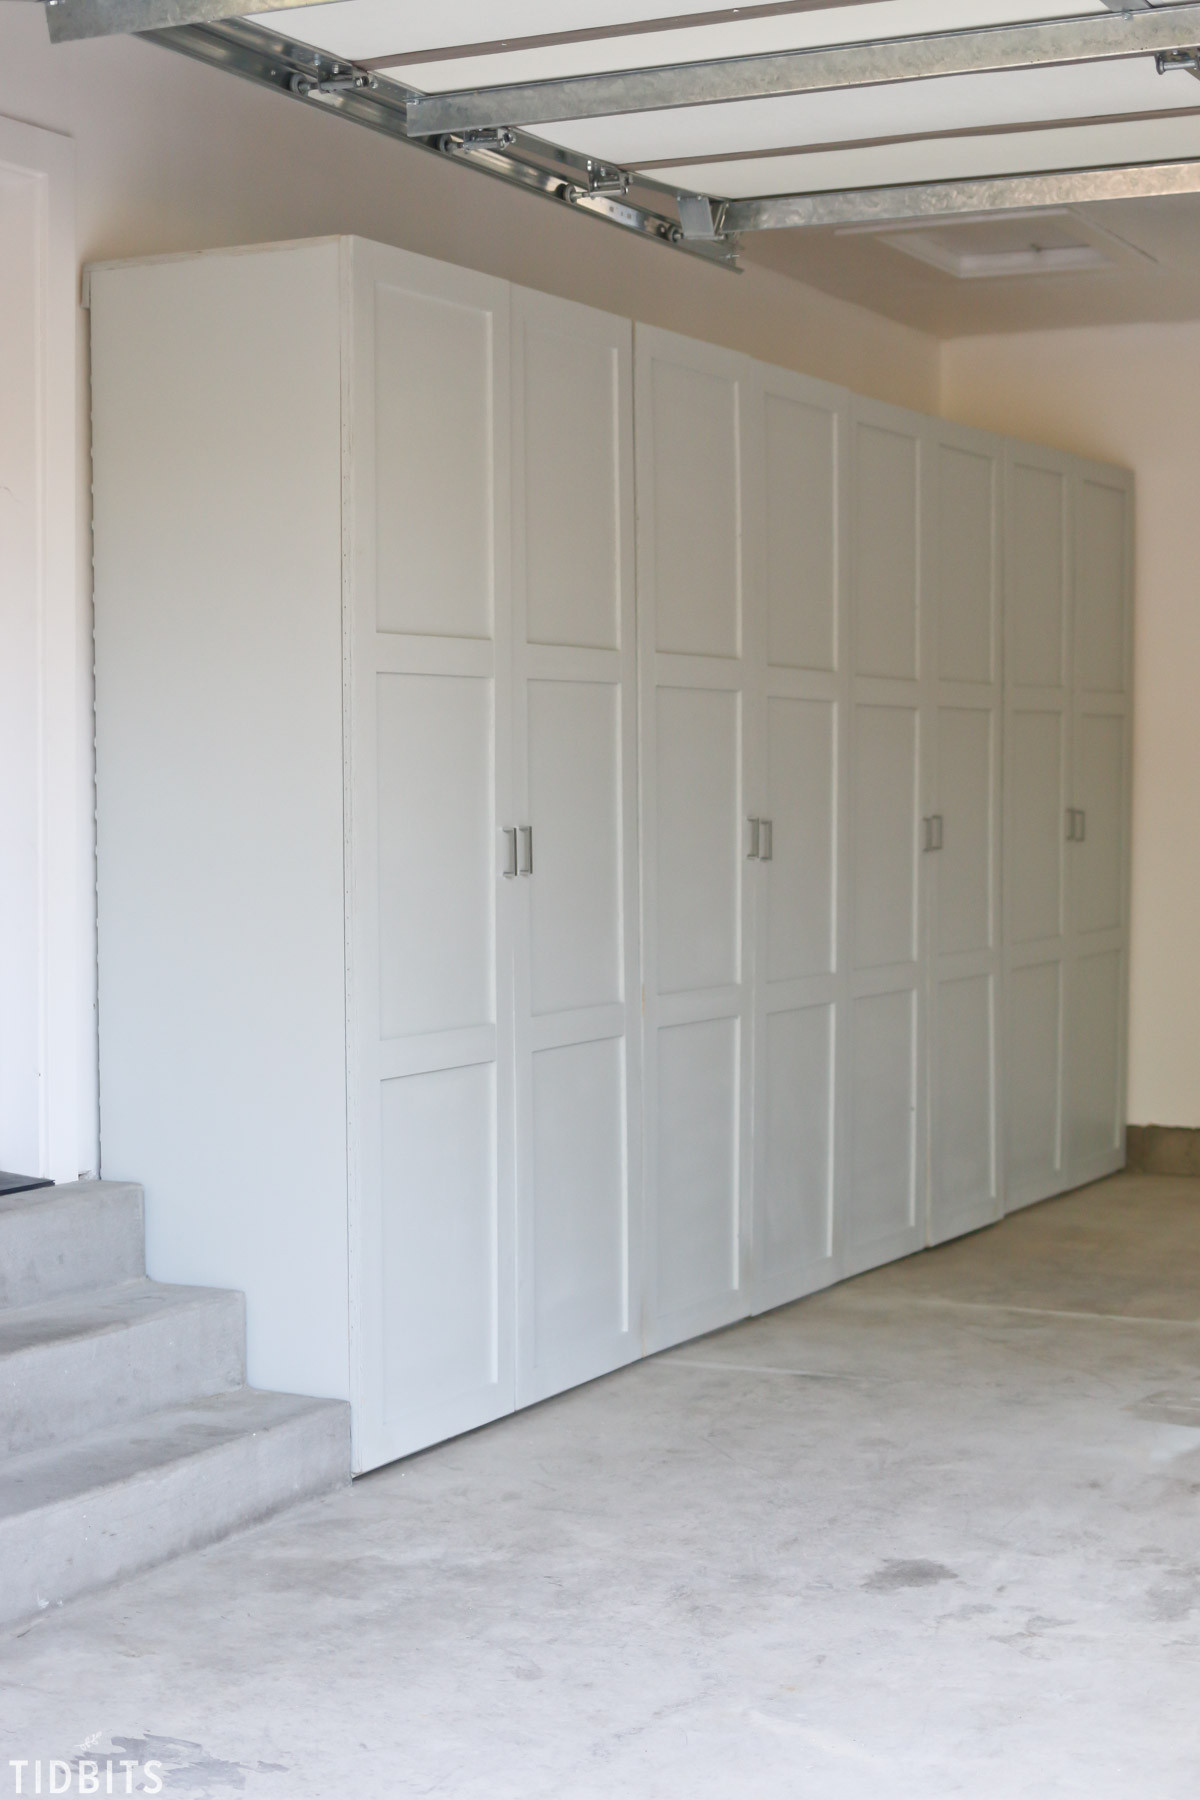 Best ideas about Storage Cabinets Garage
. Save or Pin Garage Storage Cabinets Now.